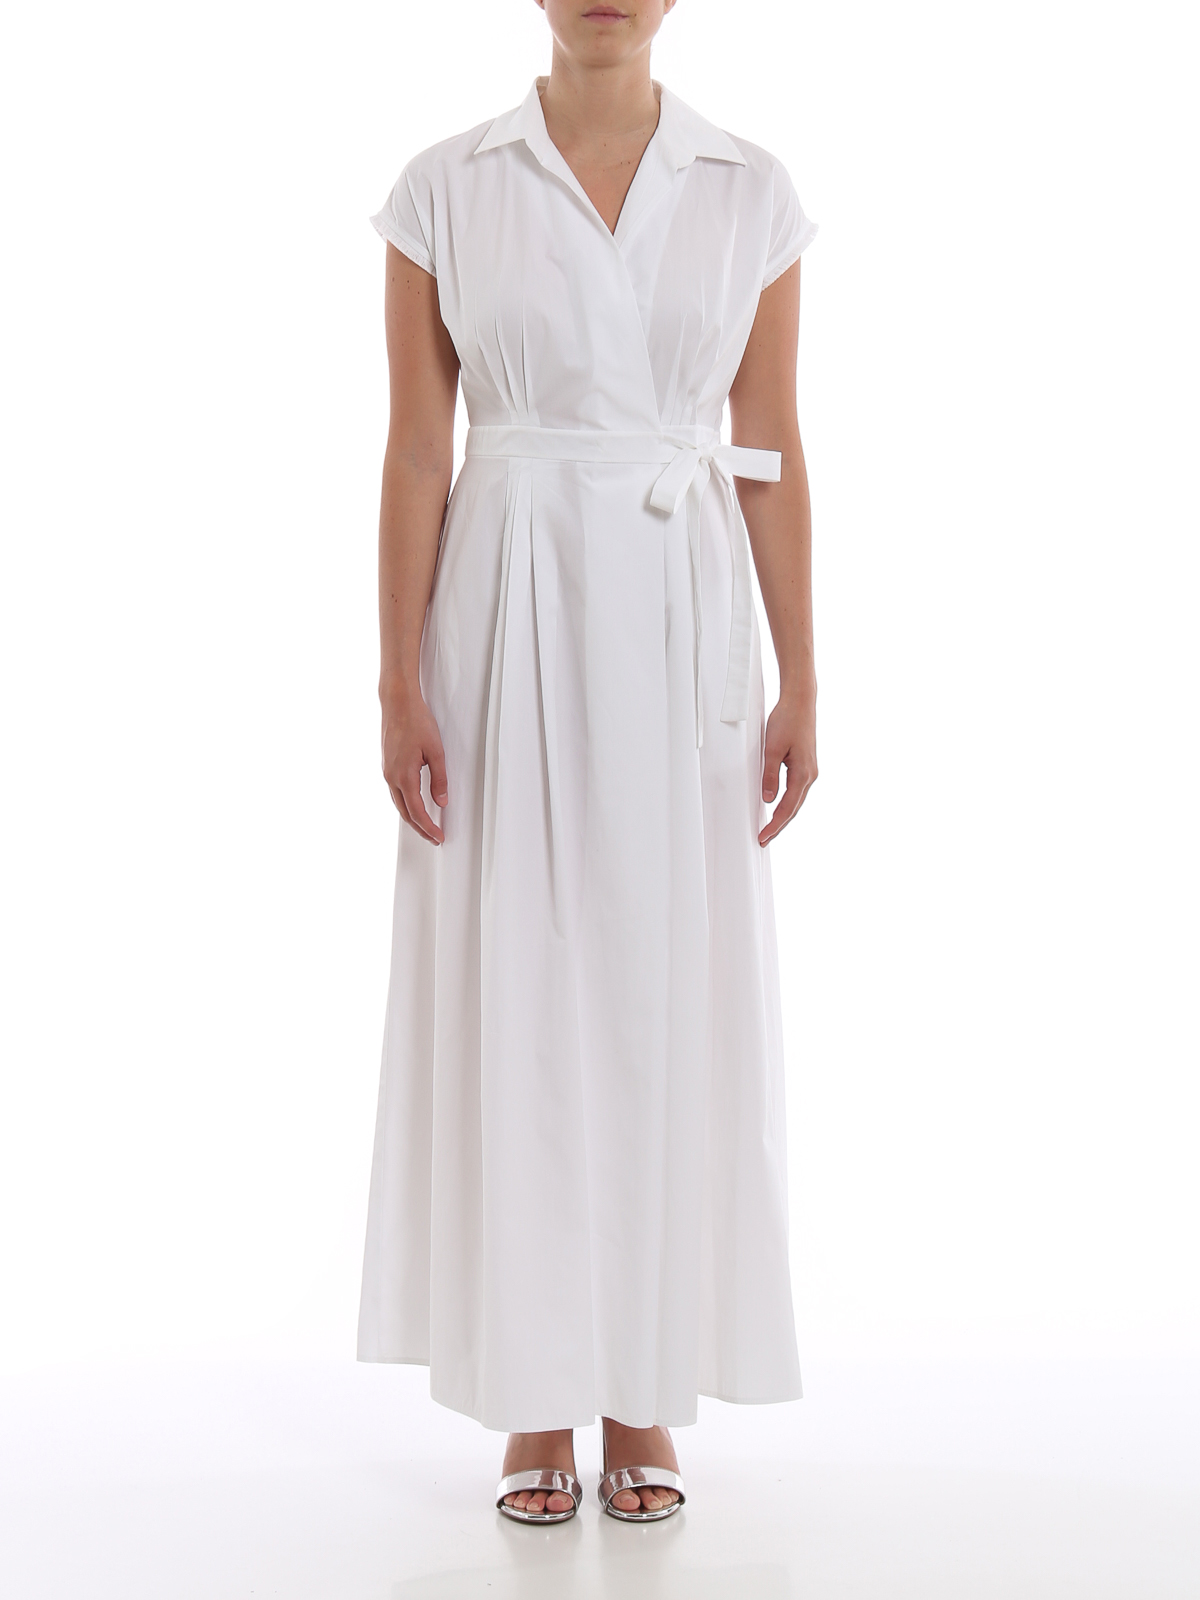 max mara white dress